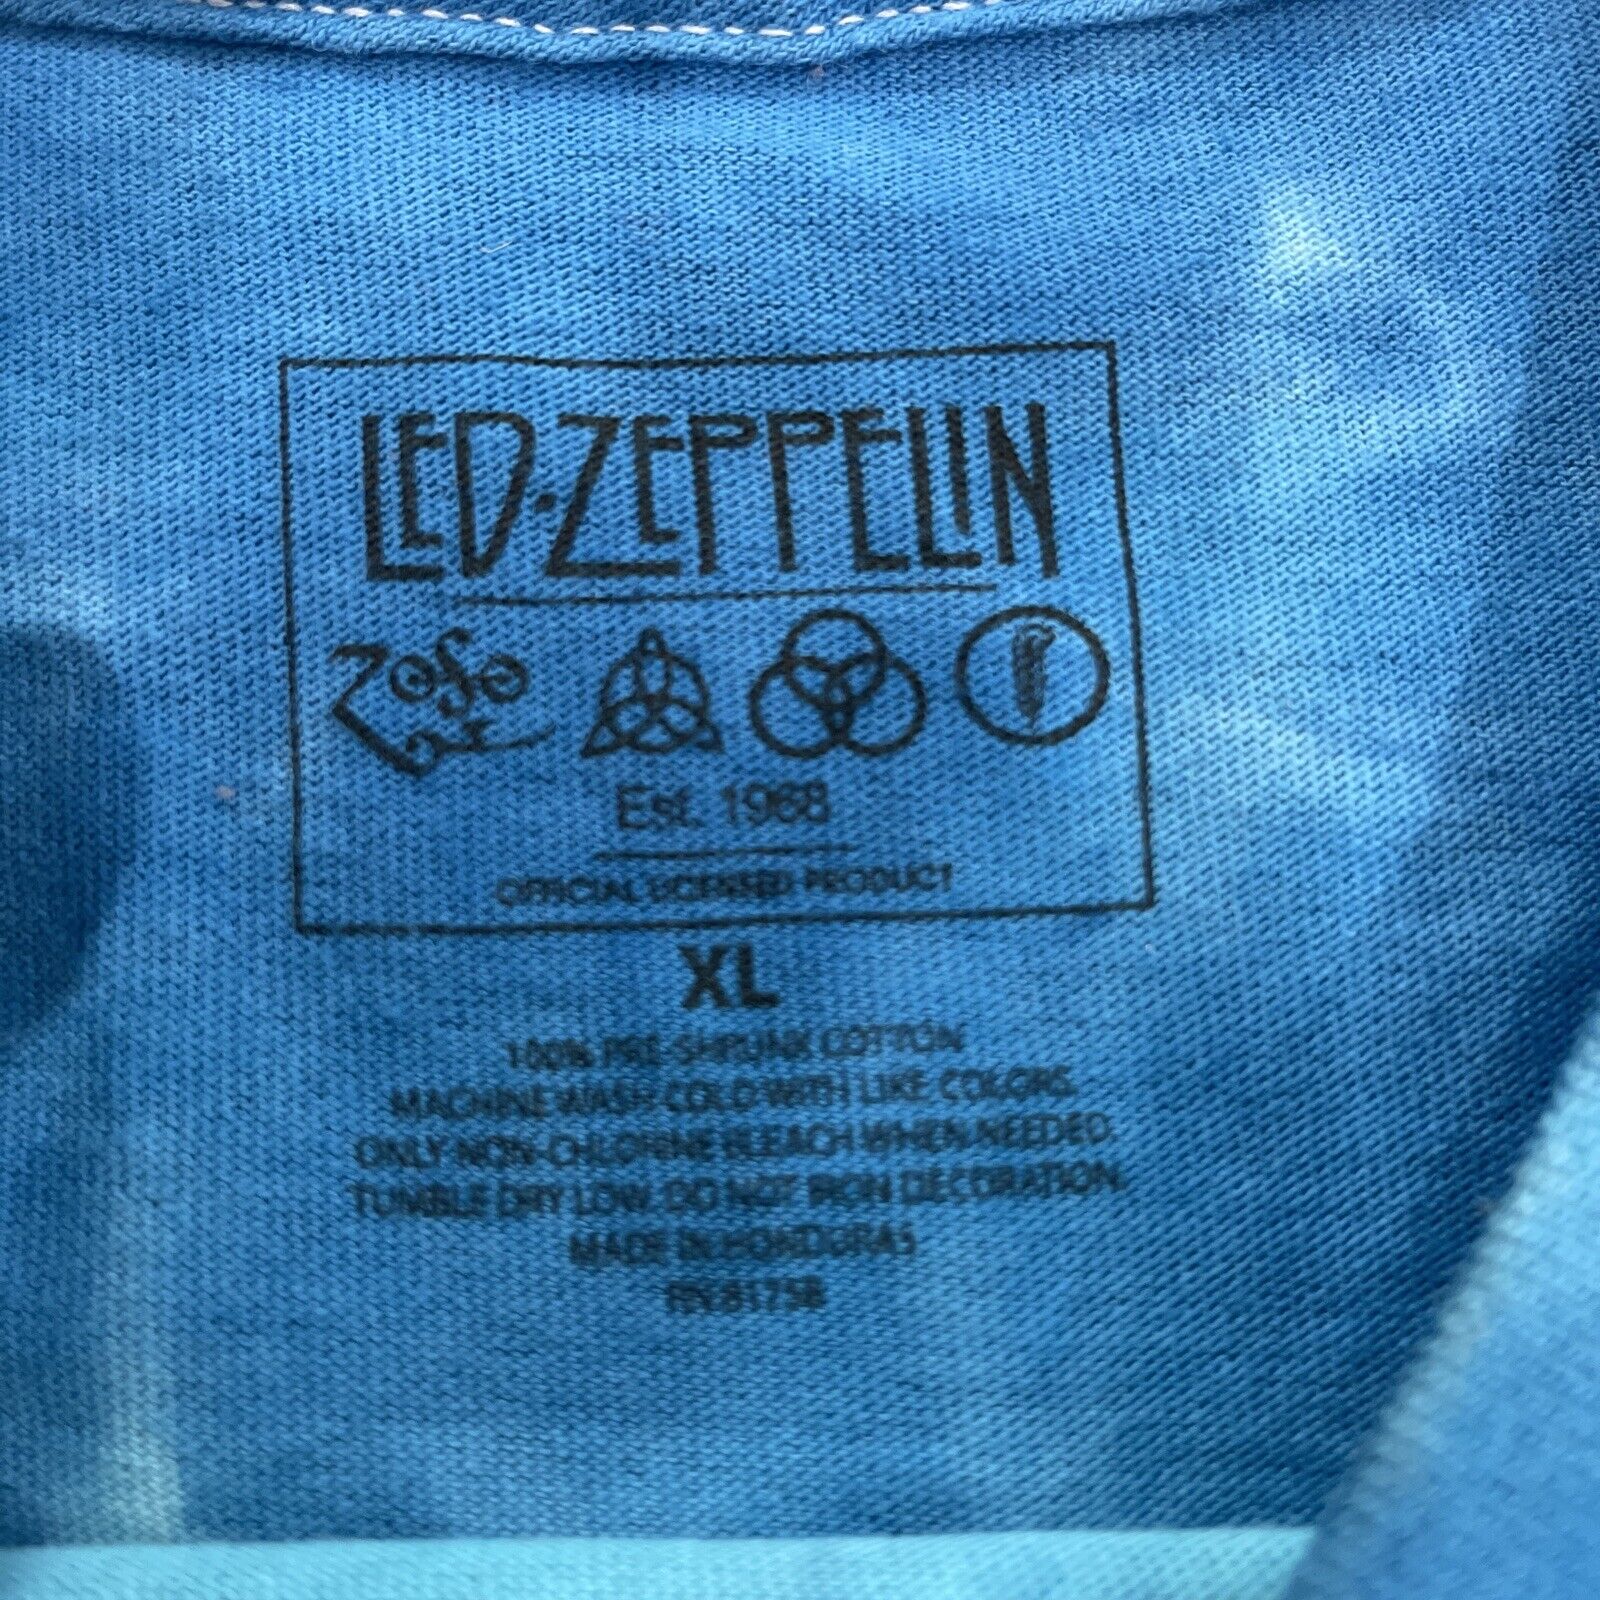 vintage led zeppelin shirt - image 2